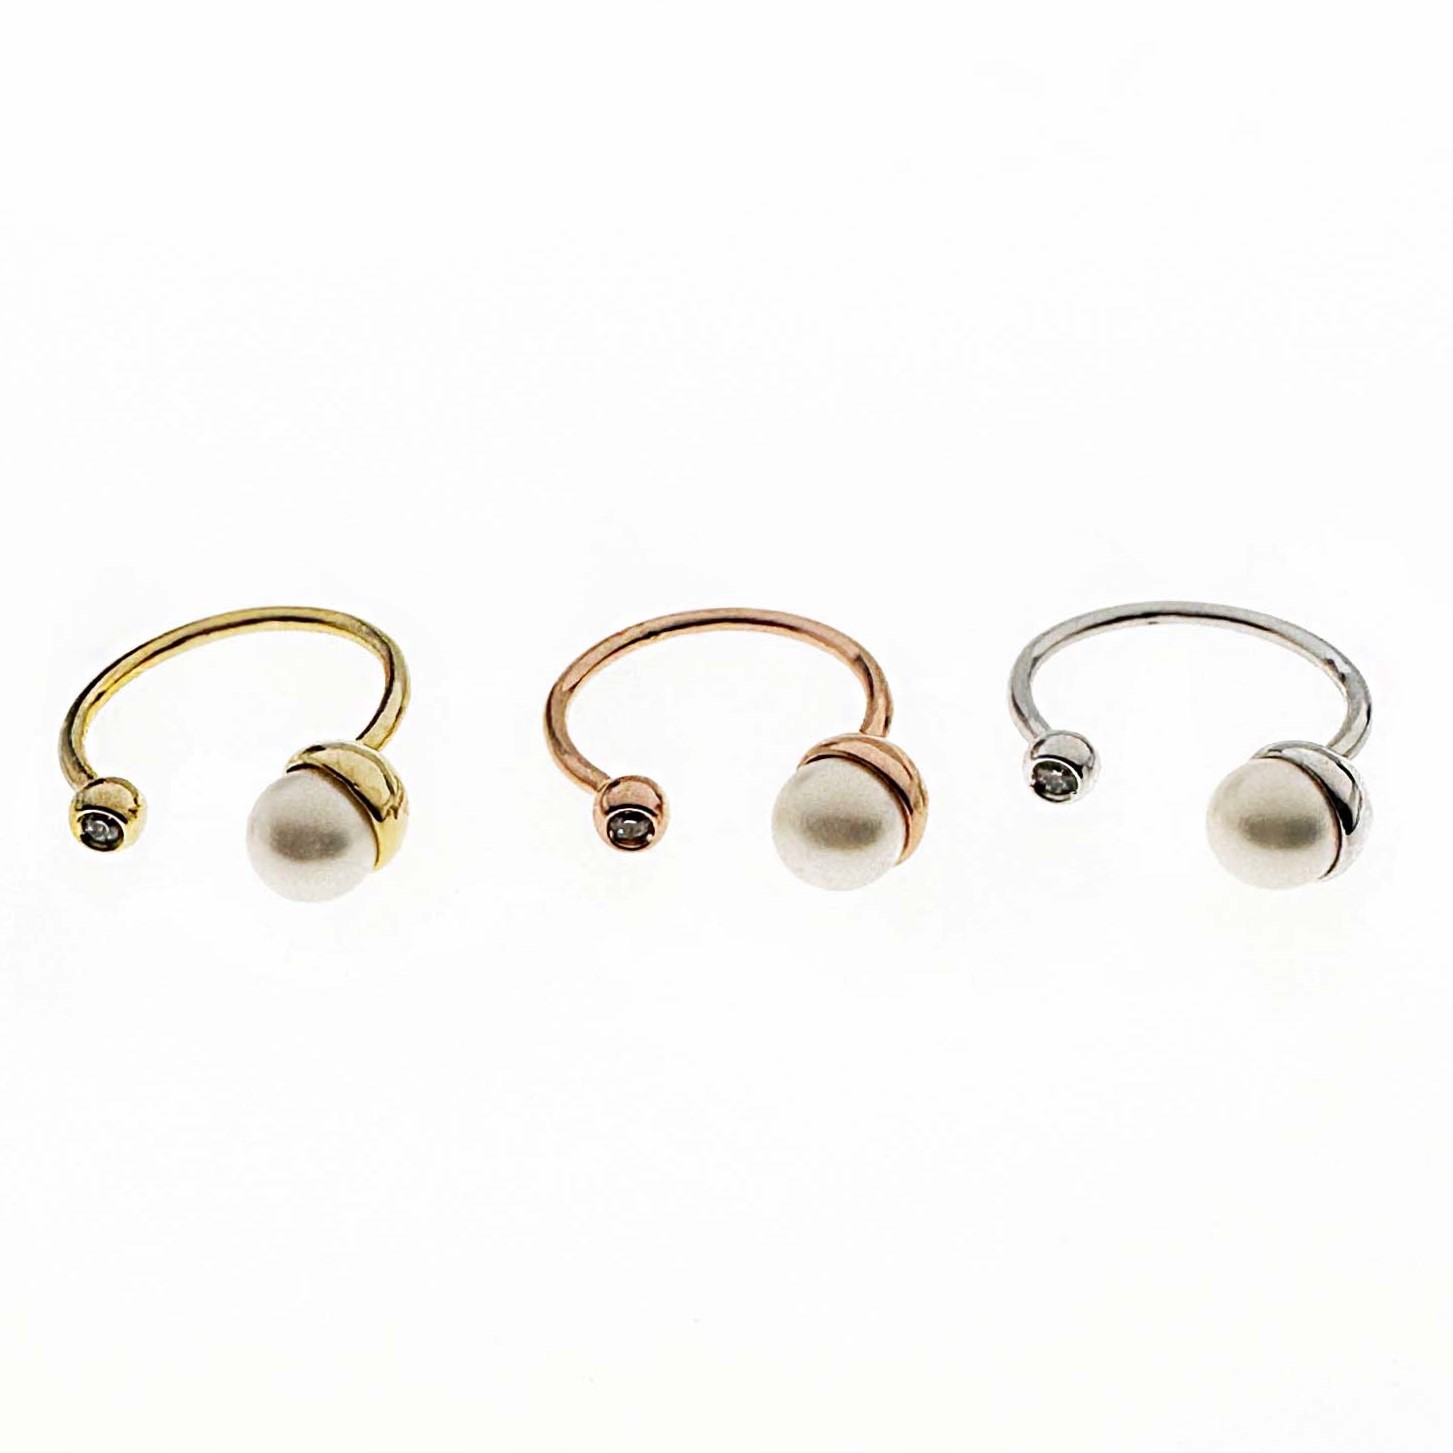 韓國 水鑽 珍珠 造型 精緻 可調節 三色 戒指